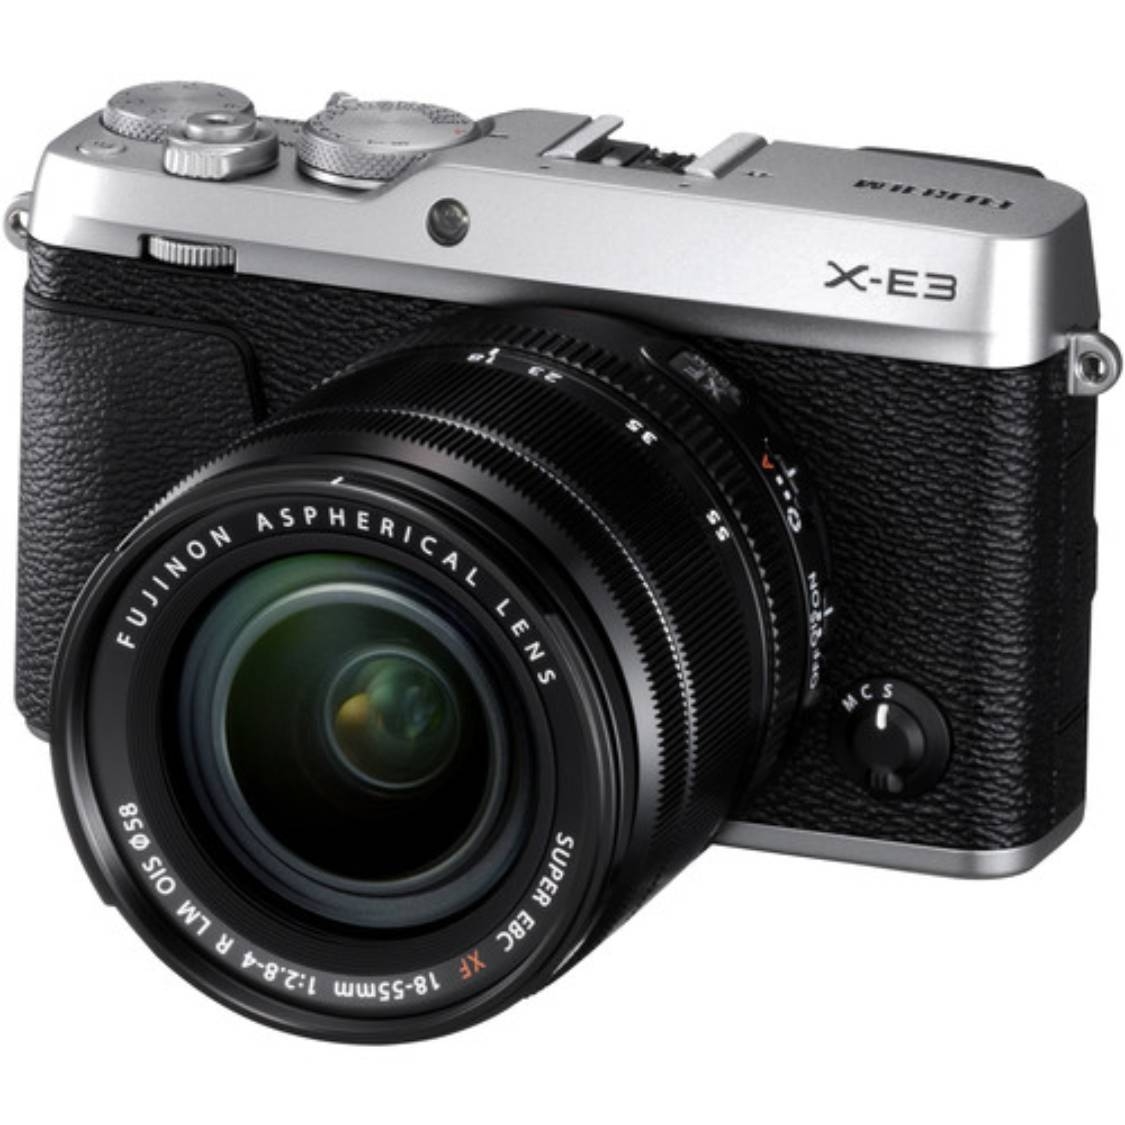 Fujifilm X-E3 with 18-55mm f2.8-4.0 Lens (silver) - Open Box